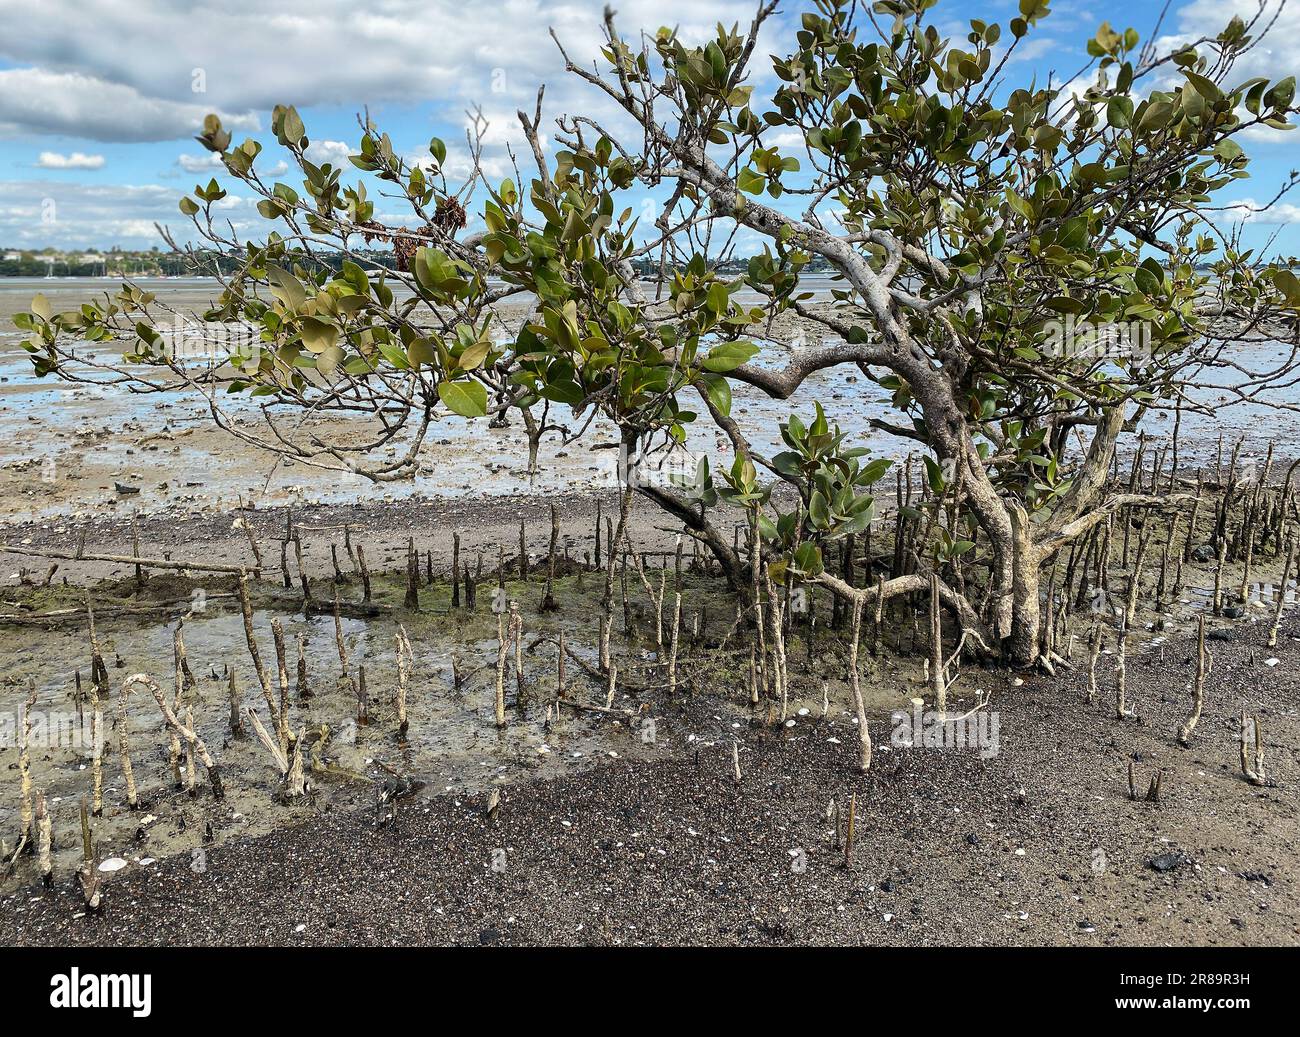 Grüne junge Mangrovenbäume und Pnematophore - Wurzeln wachsen von unten nach oben für den Gasaustausch. Mangroven an der Küste in Neuseeland anpflanzen. Stockfoto